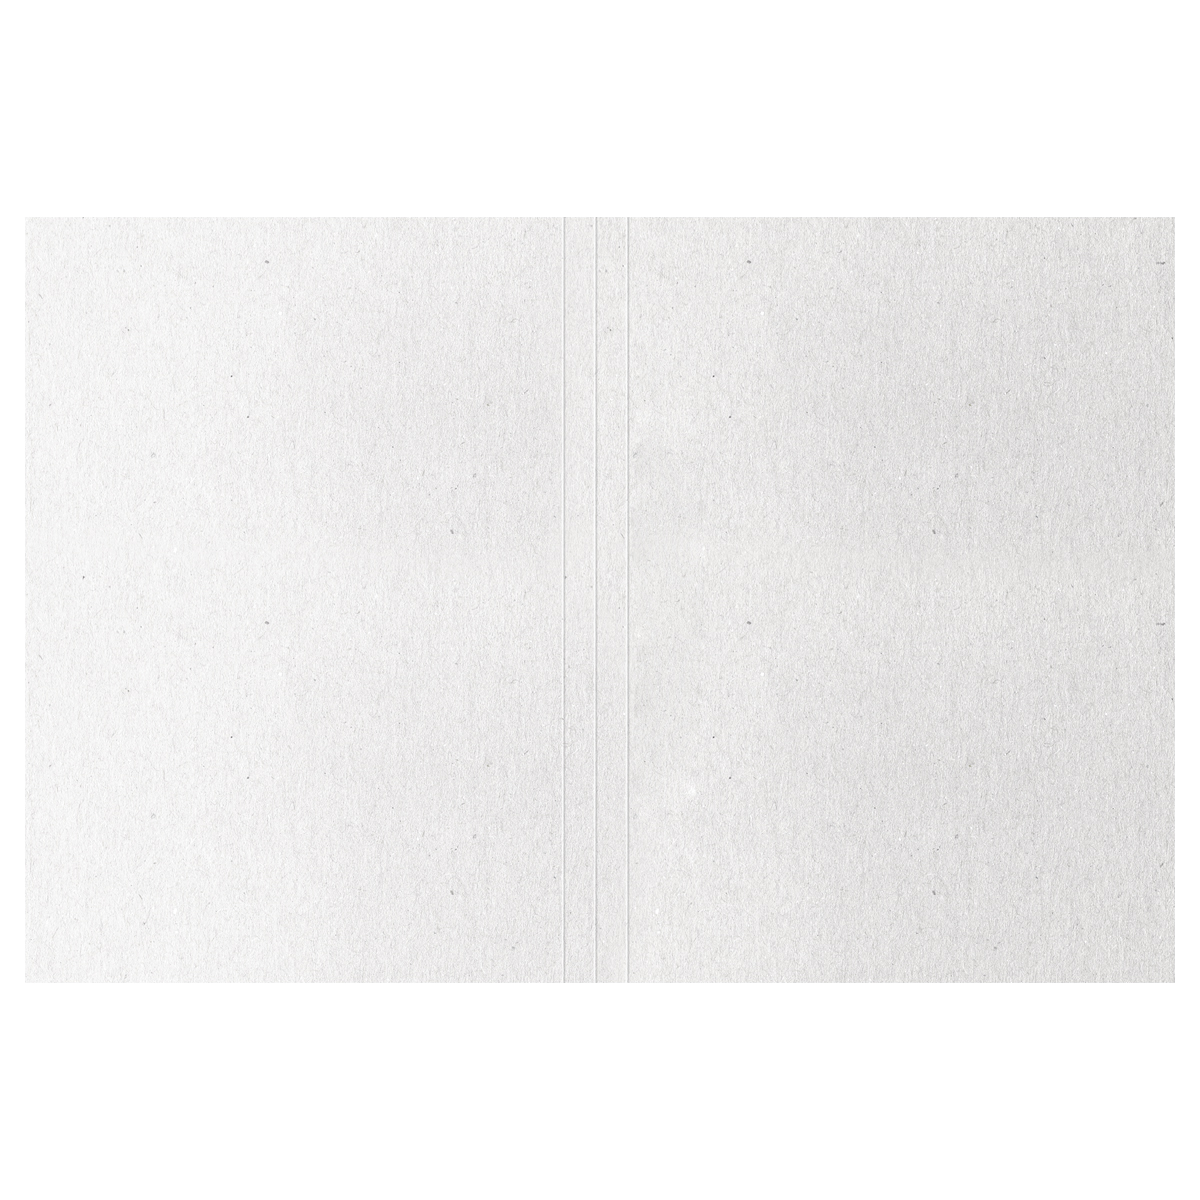 Папка-обложка OfficeSpace "Дело", картон мелованный, 300г/м2, белый, до 200л.